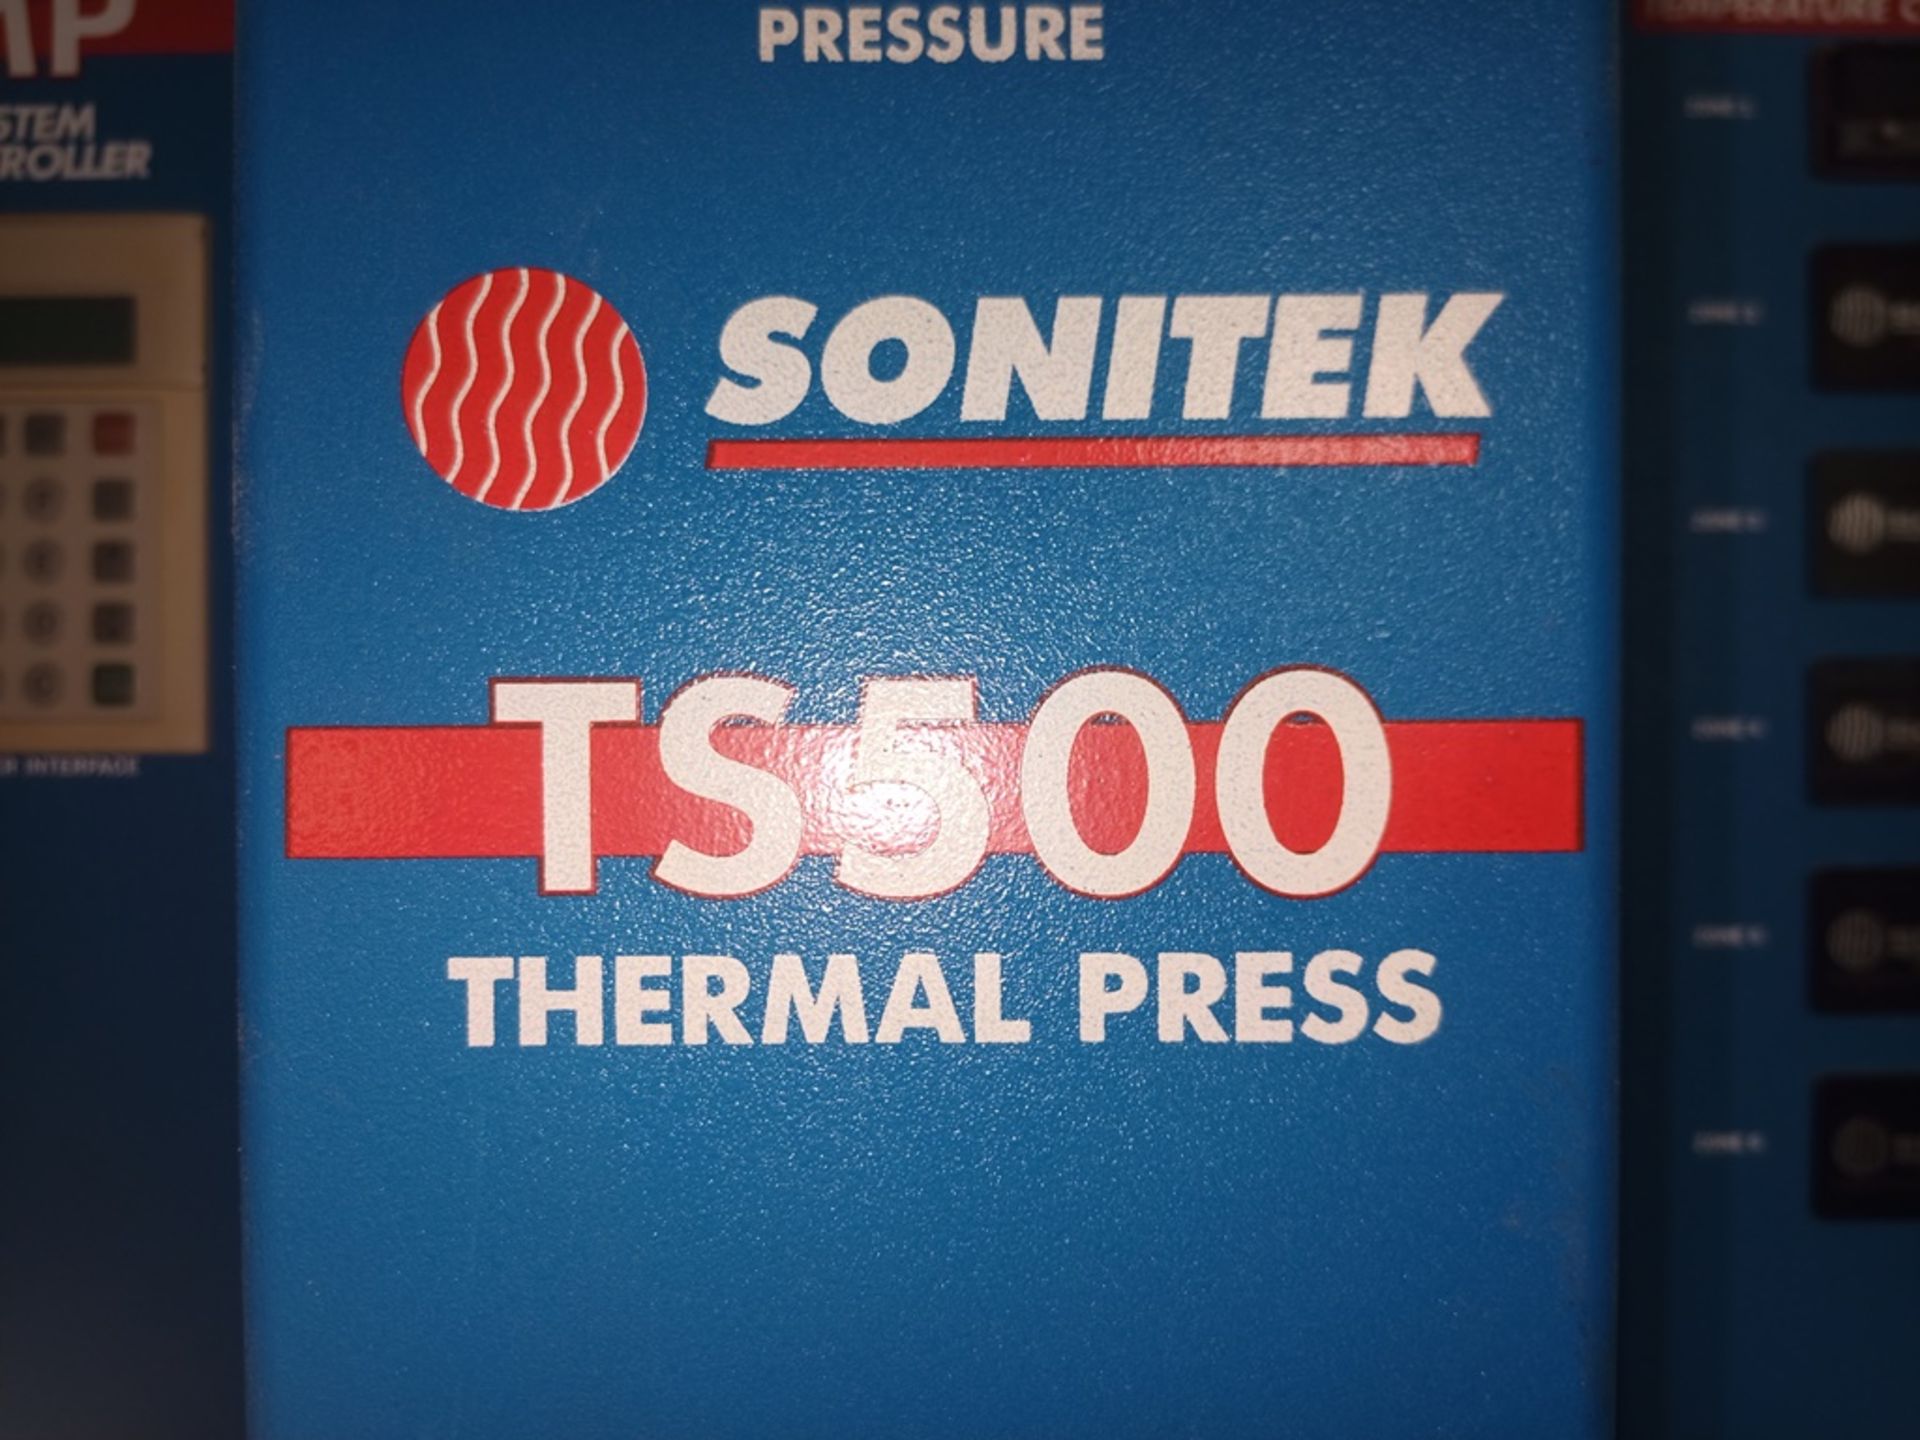 Sonitek heat press, Model MP572/1, includes pneumatic press of 1/4 de ton - Image 10 of 17